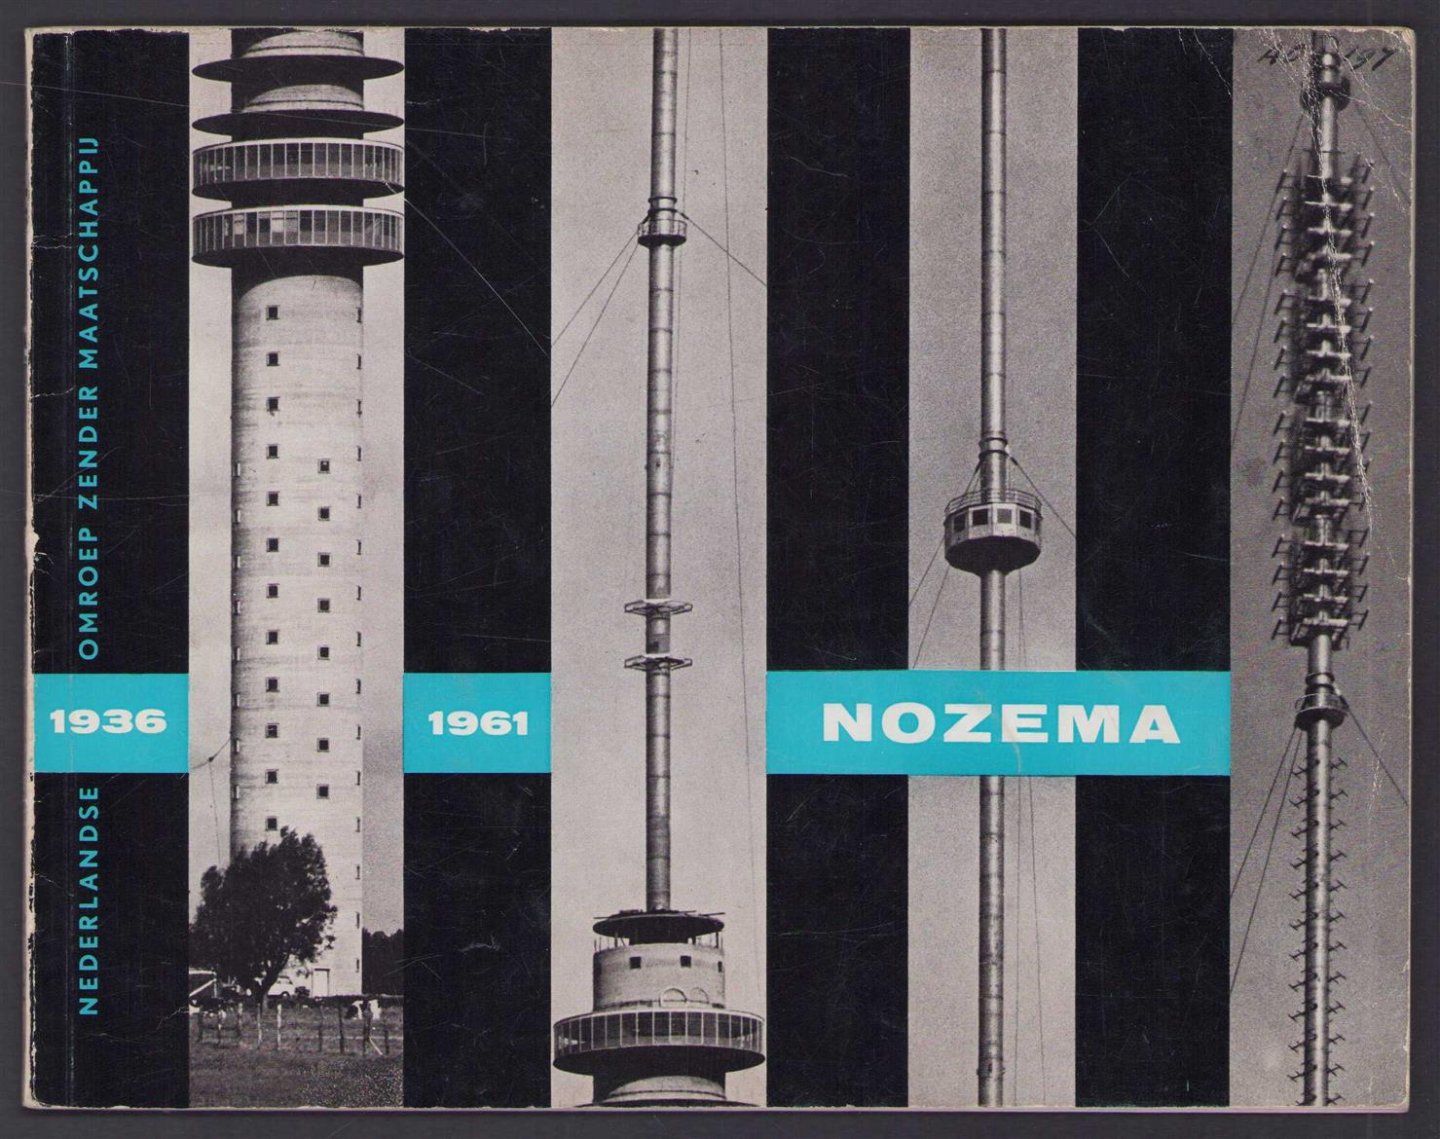 Willem Vogt - Nozema 1936-1961 : korte beschrijving van de voorgeschiedenis, het ontstaan en de ontwikkeling van de NOZEMA, naar aanleiding van haar 25-jarig bestaan in 1961.